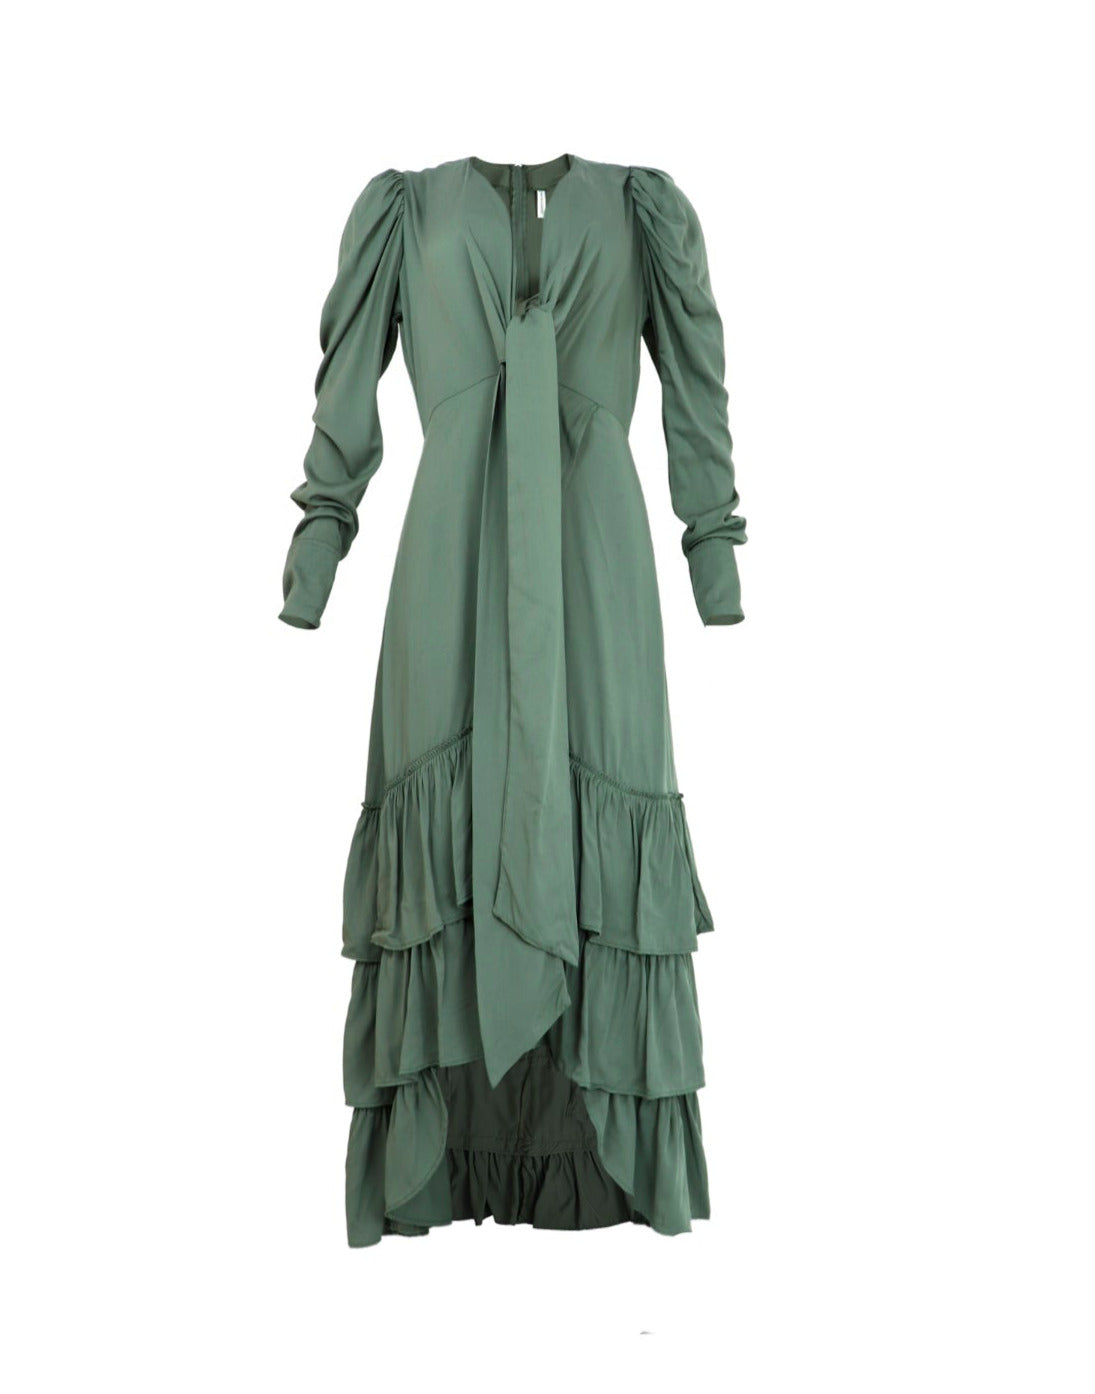 Vestido con lazos para mujer en color verde oliva